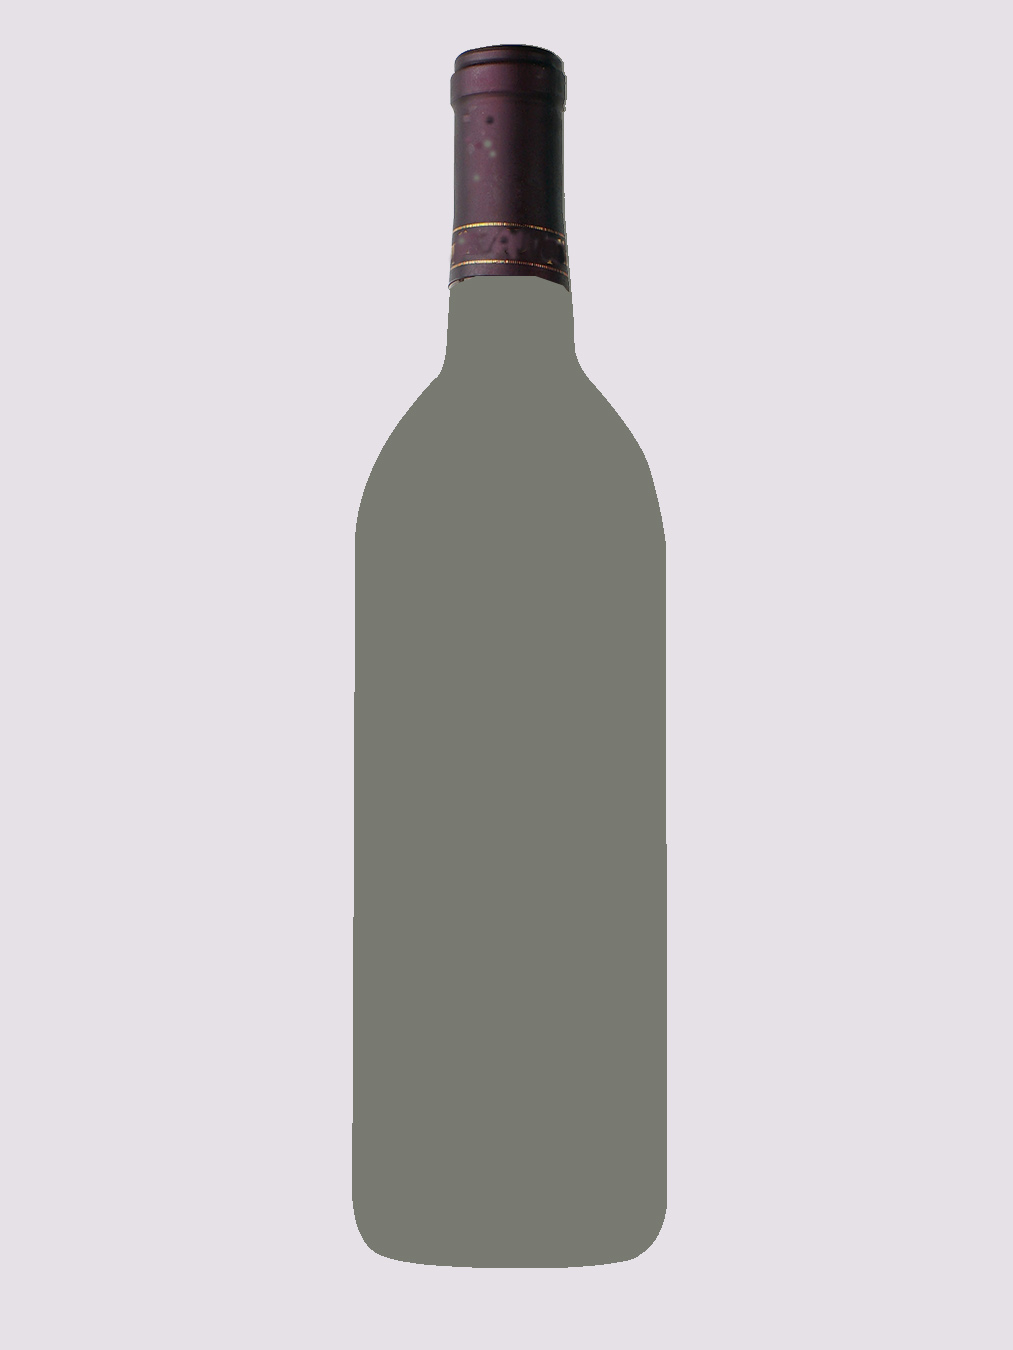 Mutupo Merlot wine